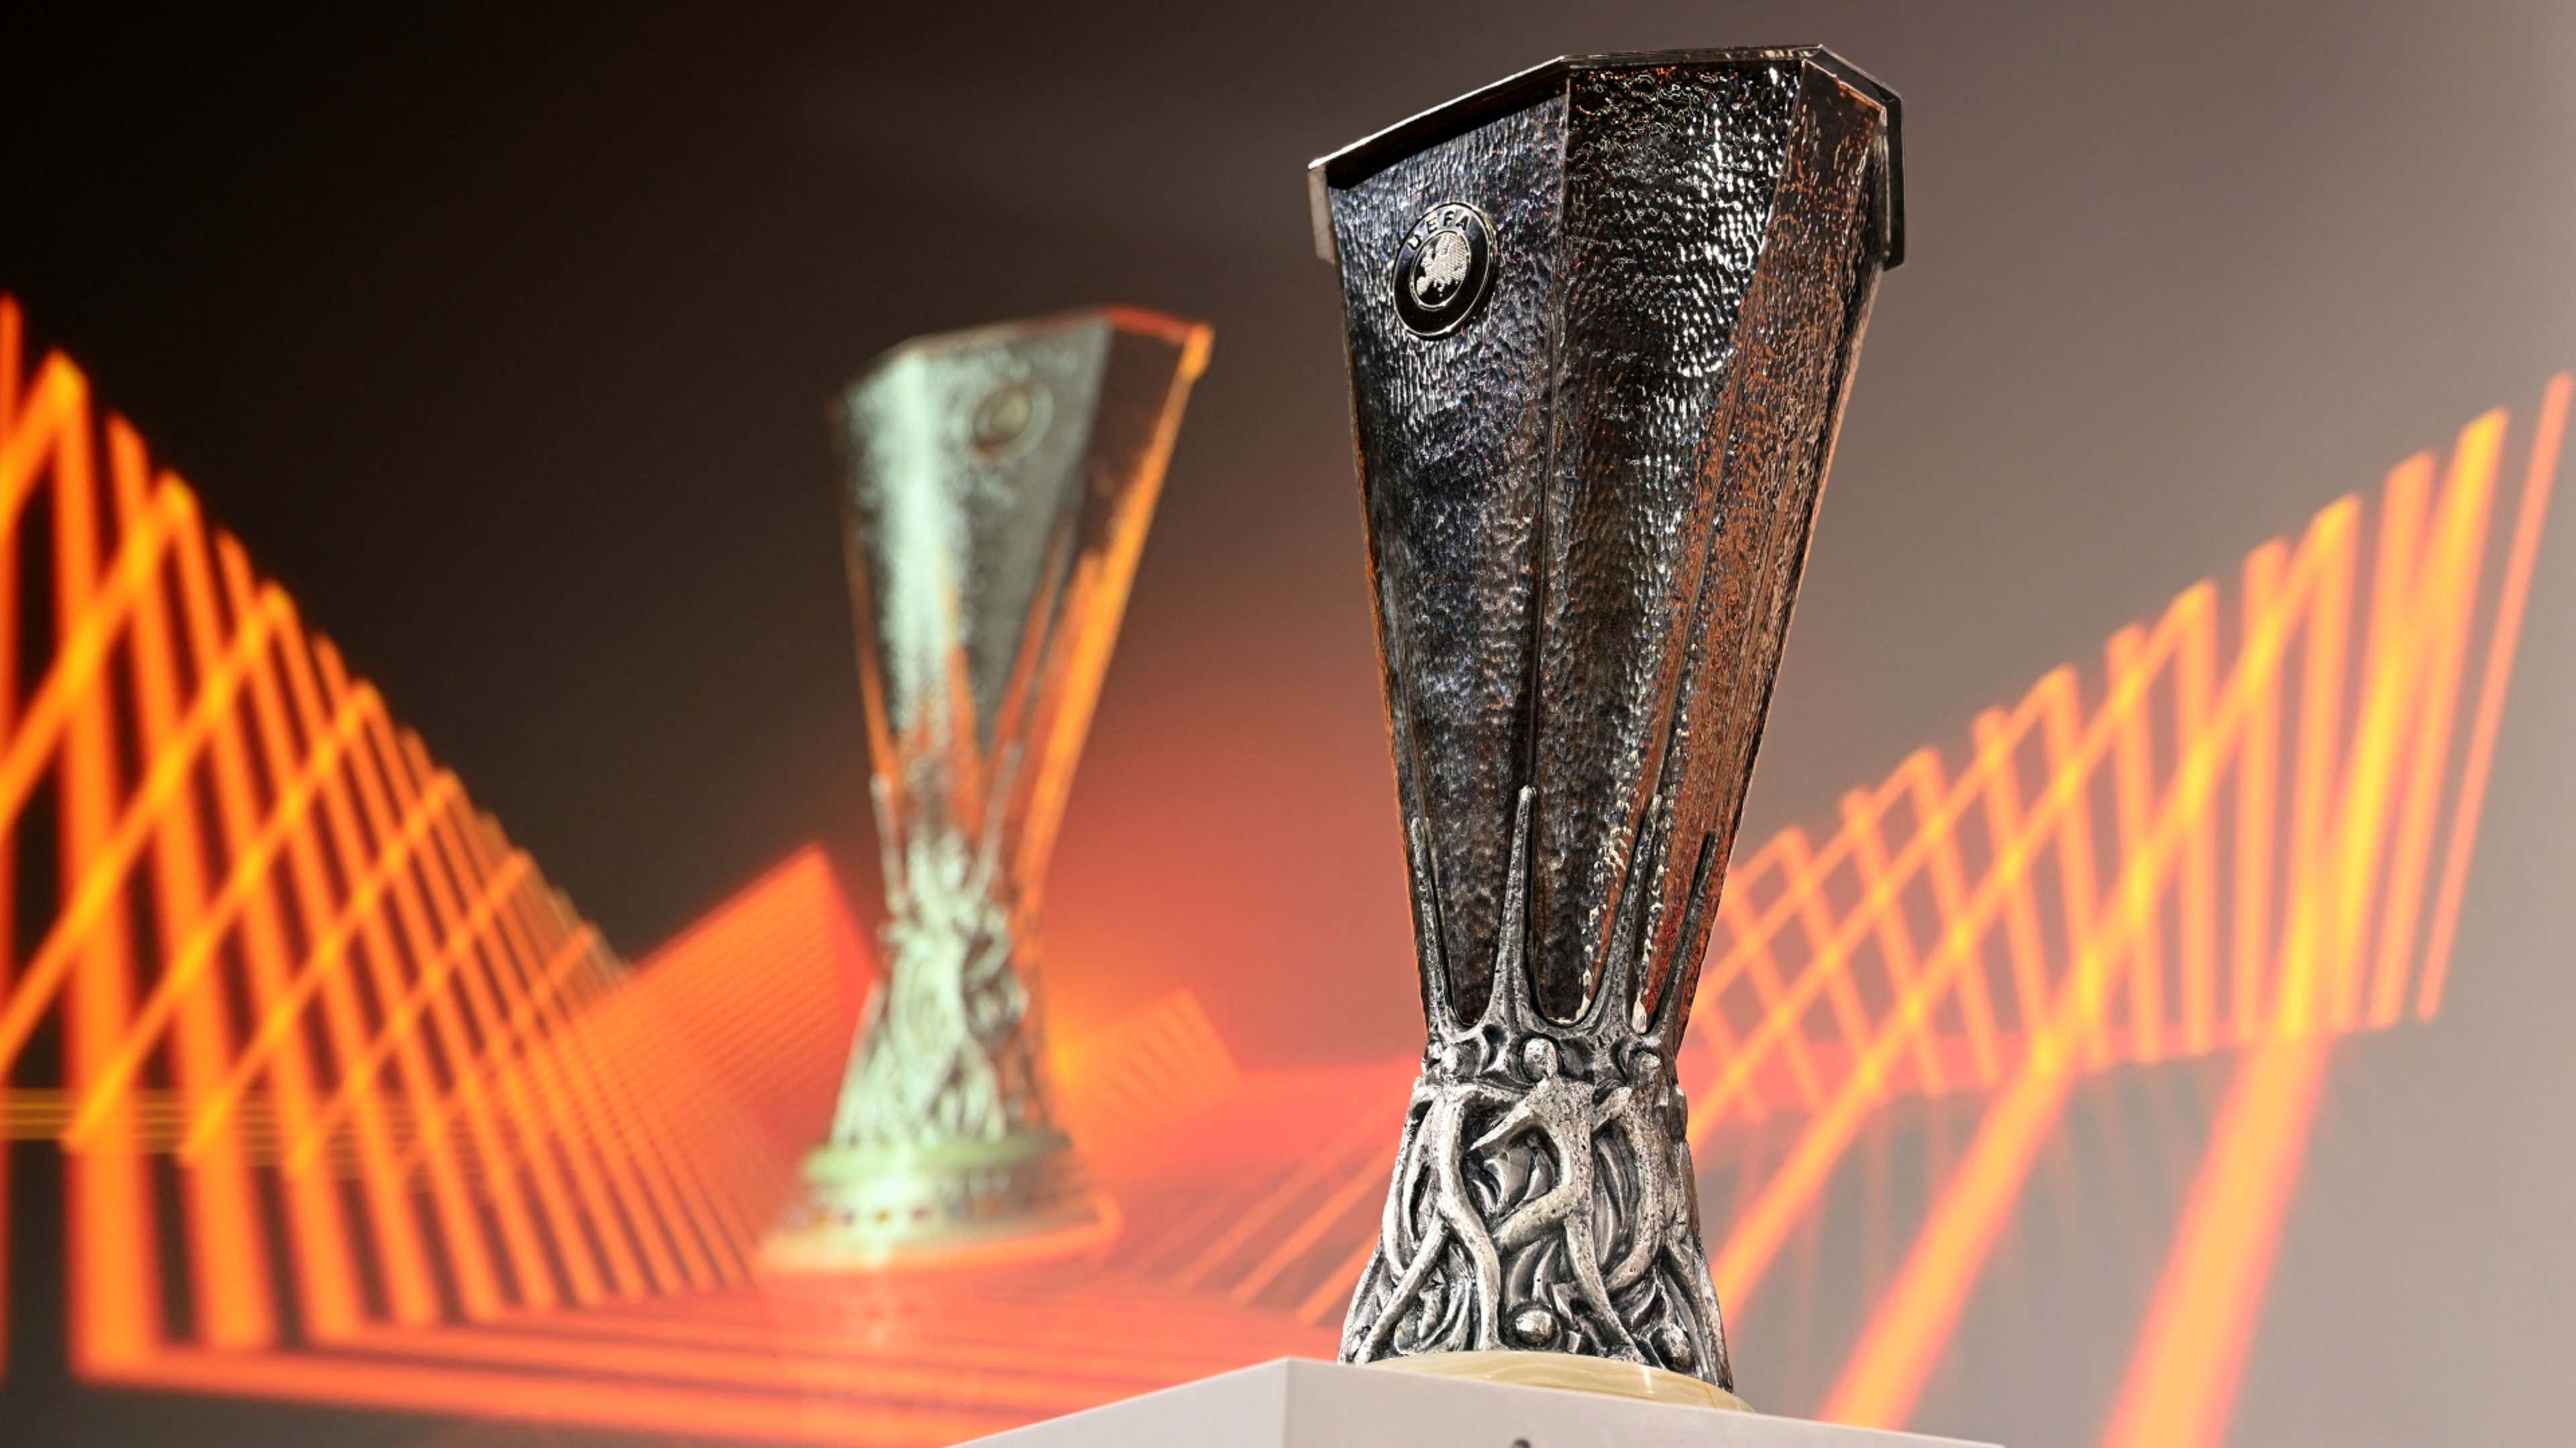 PLACAR lança Guia da Champions e das ligas europeias 2022/2023